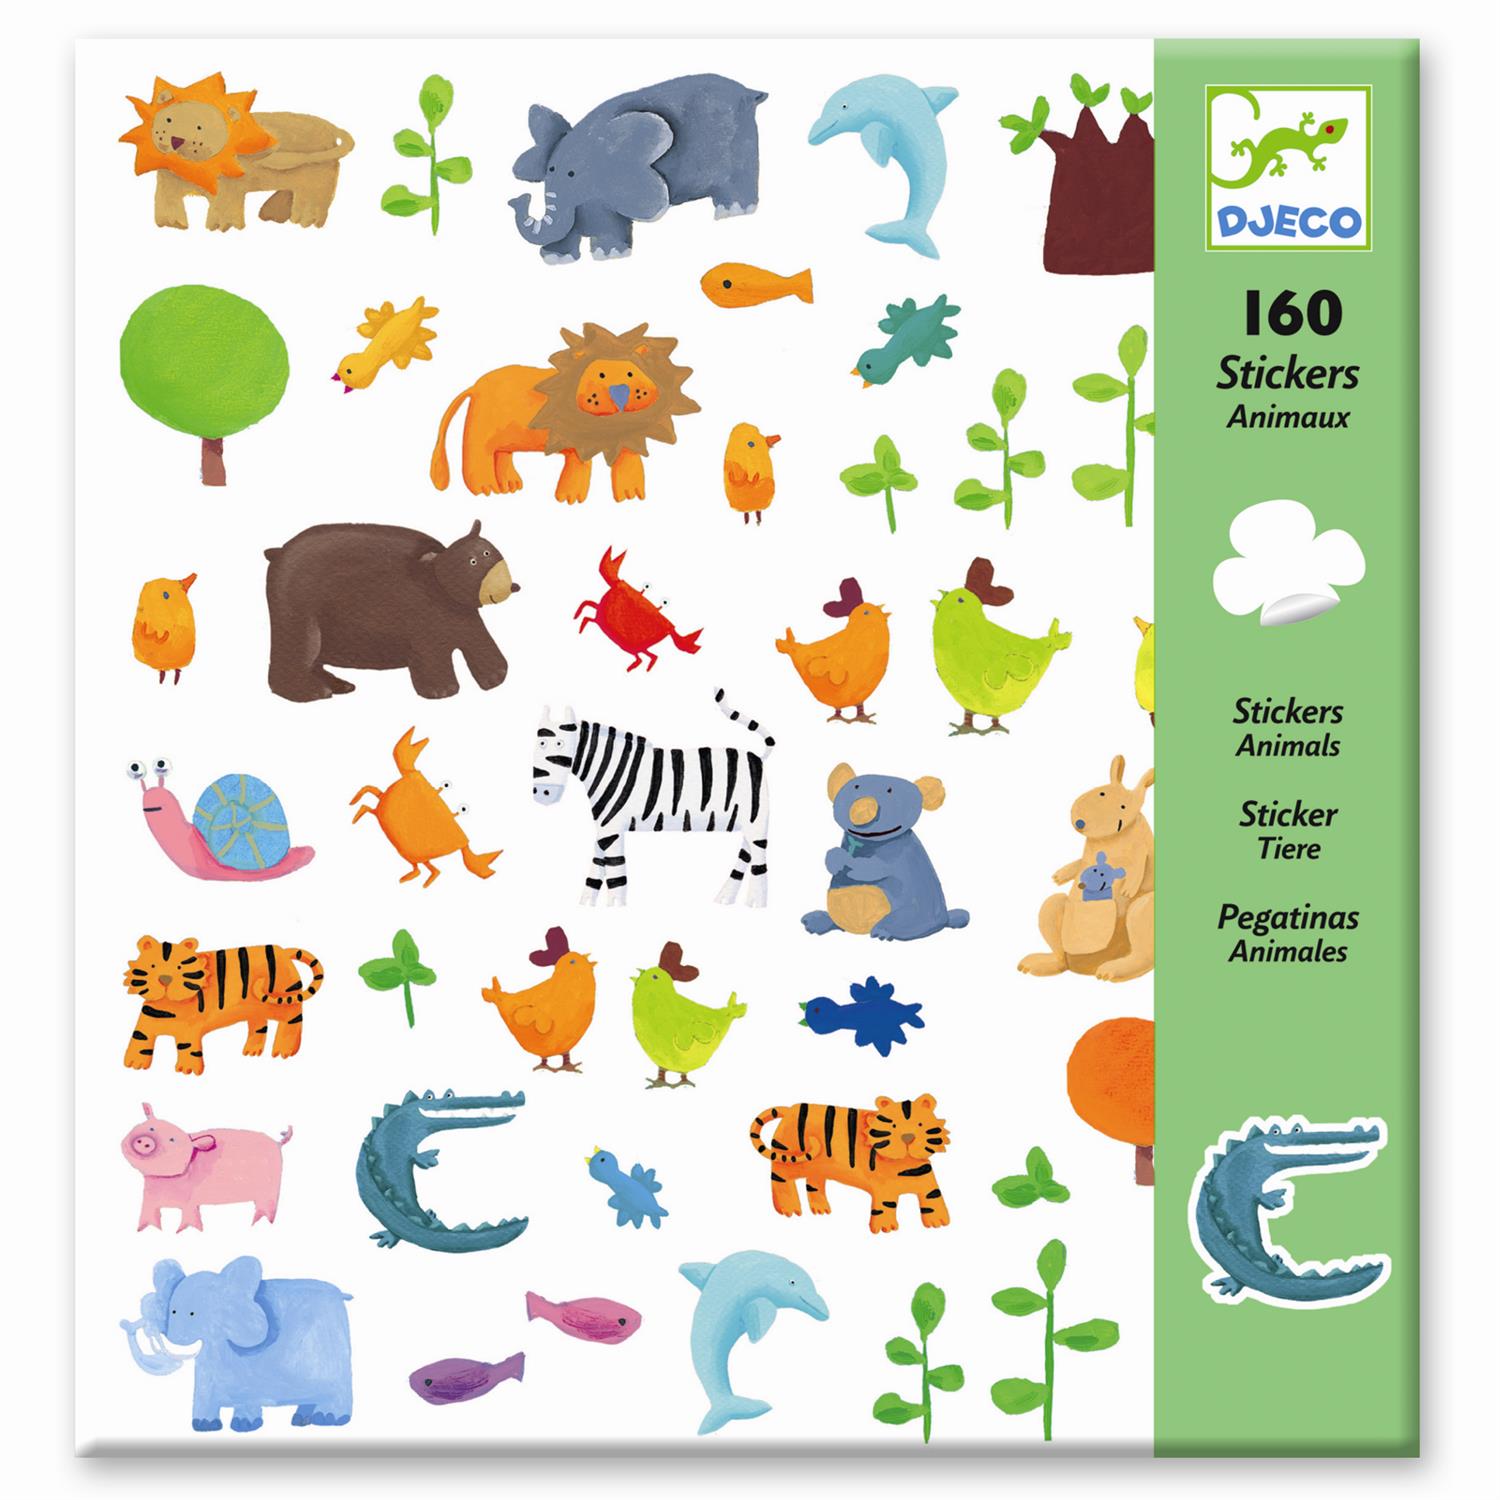 DJECO Stickers Animals